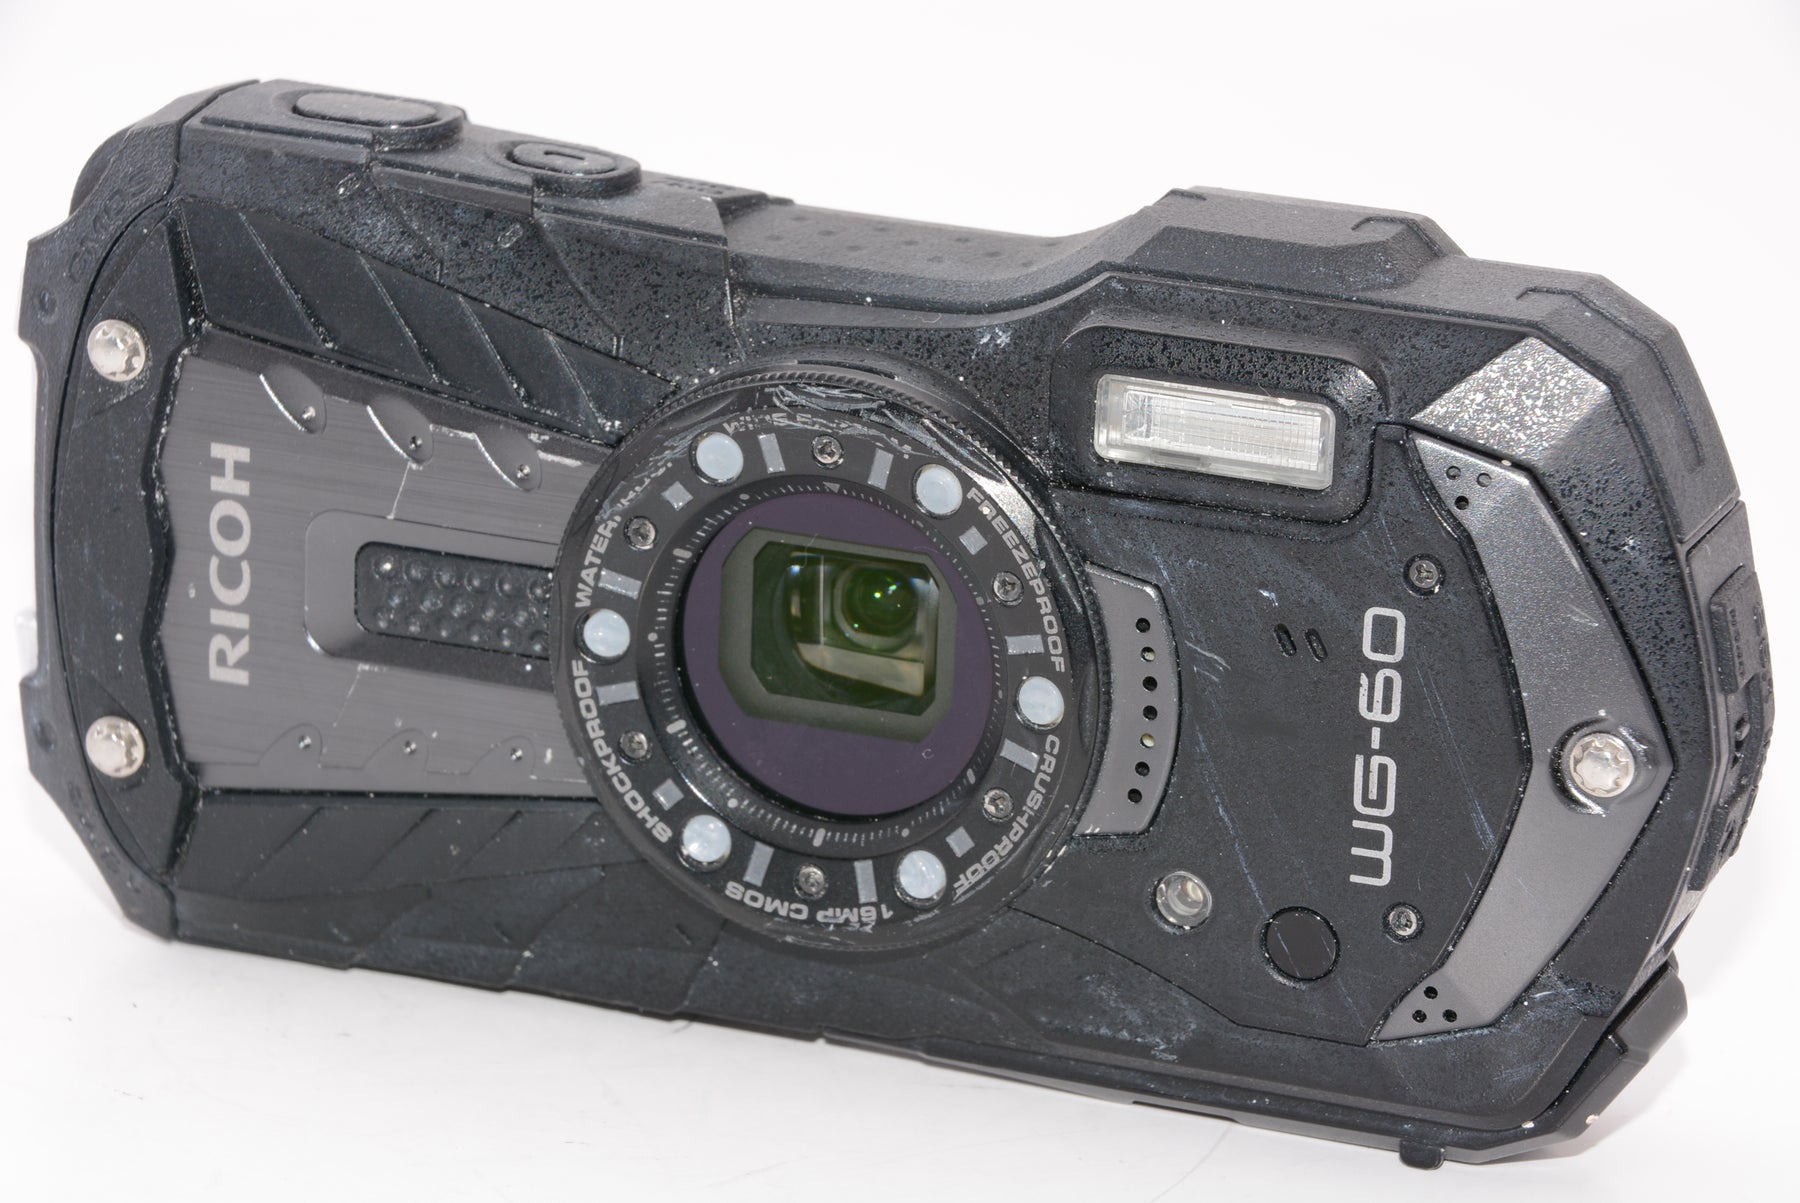 【オススメ】RICOH WG-60 ブラック 本格防水デジタルカメラ 14メートル防水 耐衝撃 防塵 耐寒 高画質1600万画素  水中専用マーメードモード搭載 仕事に使える「CALSモード」搭載